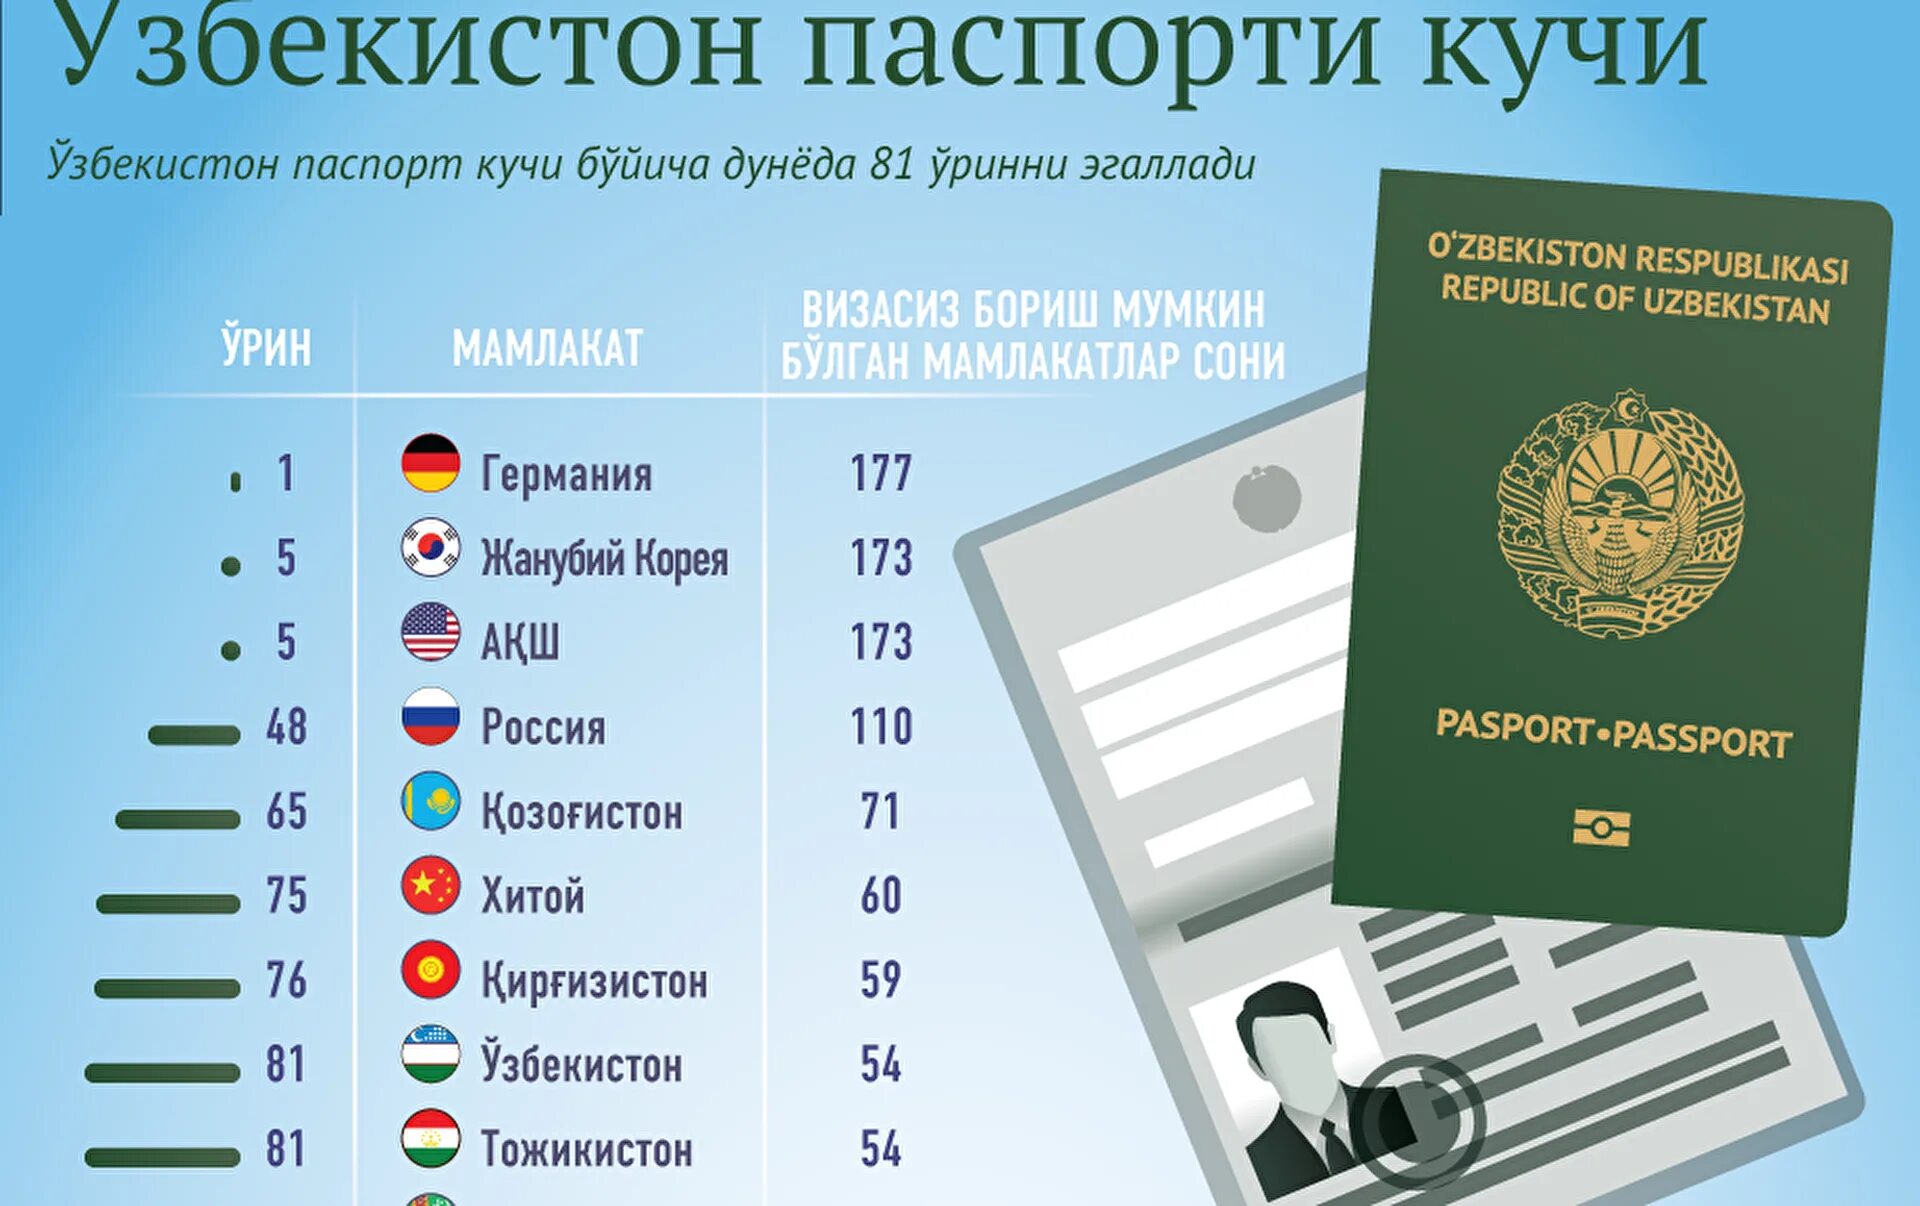 Виза для граждан Узбекистана. Безвизовые страны для граждан Узбекистана. Визовые требования для граждан Узбекистана.